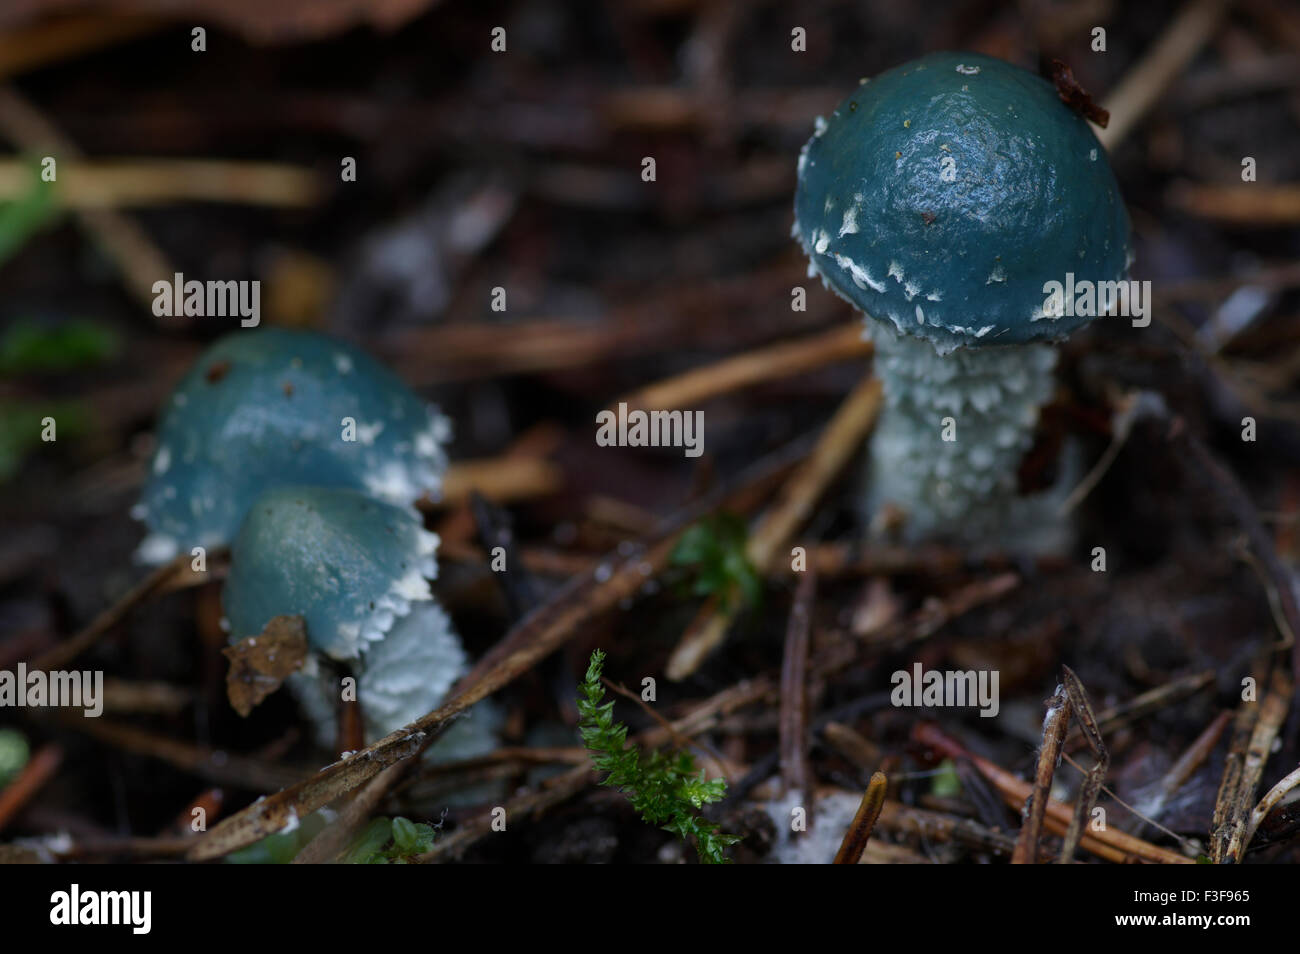 Stropharia caerulea champignons bleu-vert, l'Estonie, le 06 octobre, 2015 Banque D'Images